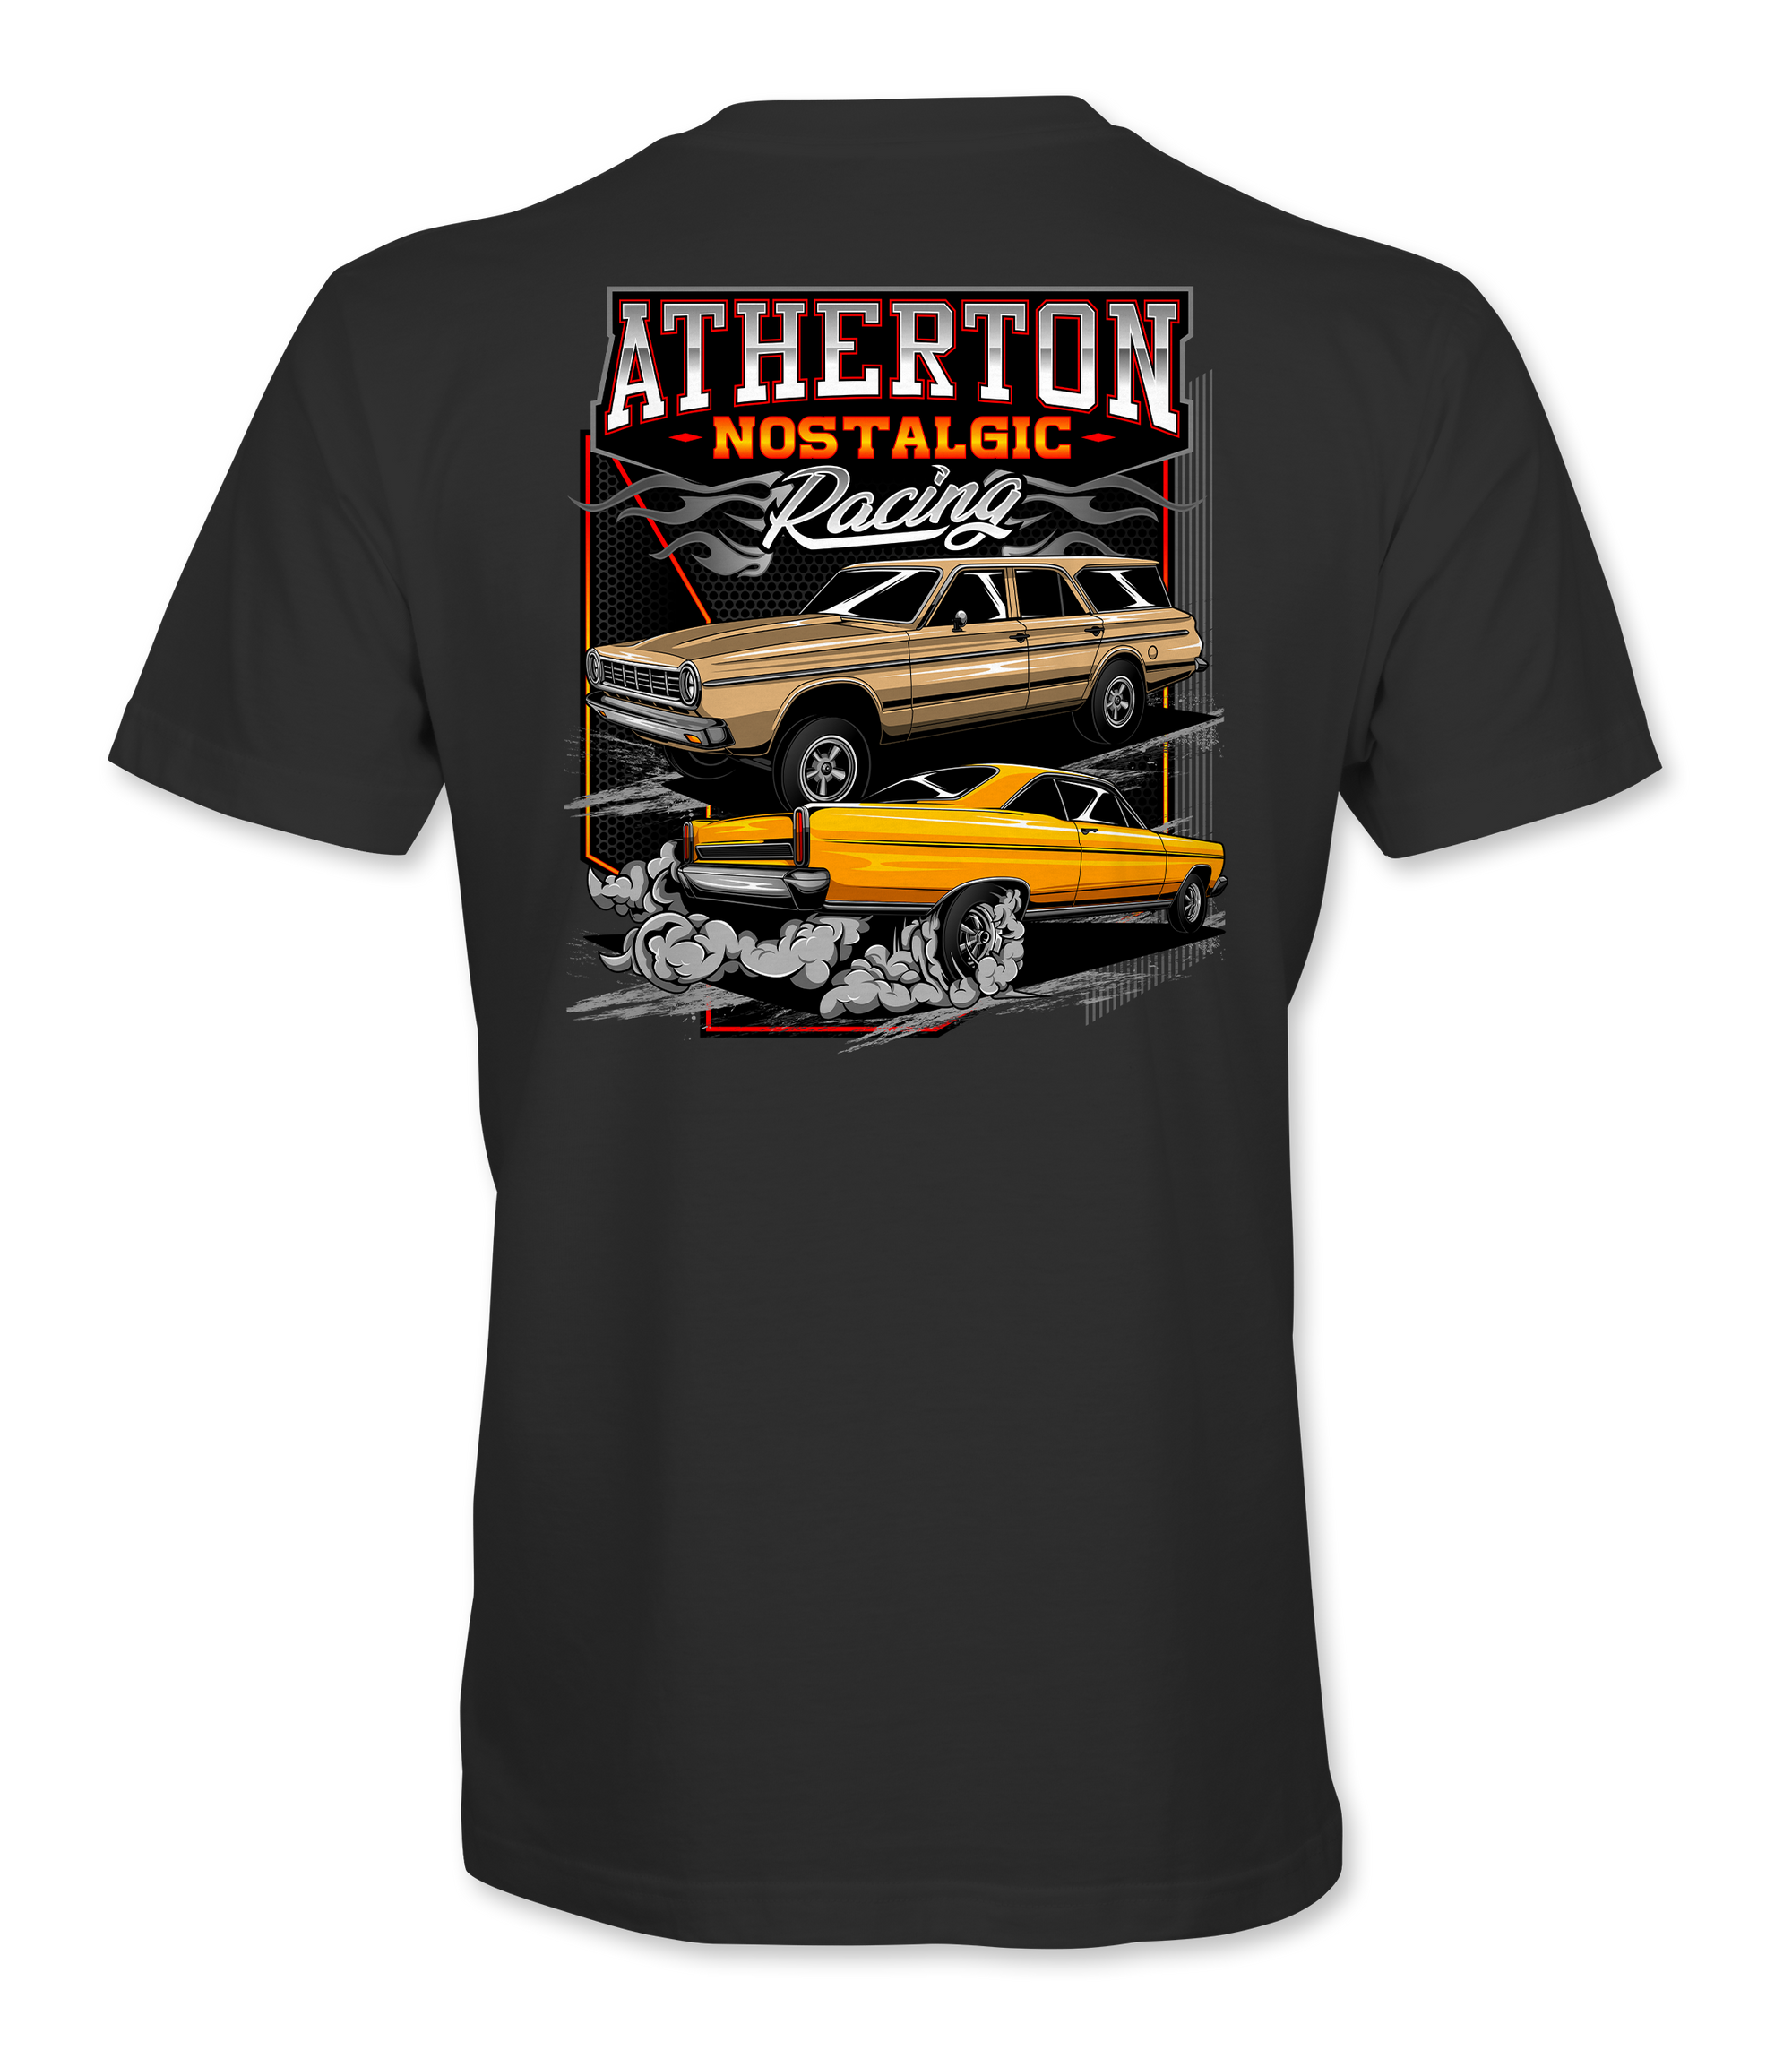 Atherton Nostalgic Racing T-Shirts Black Acid Apparel